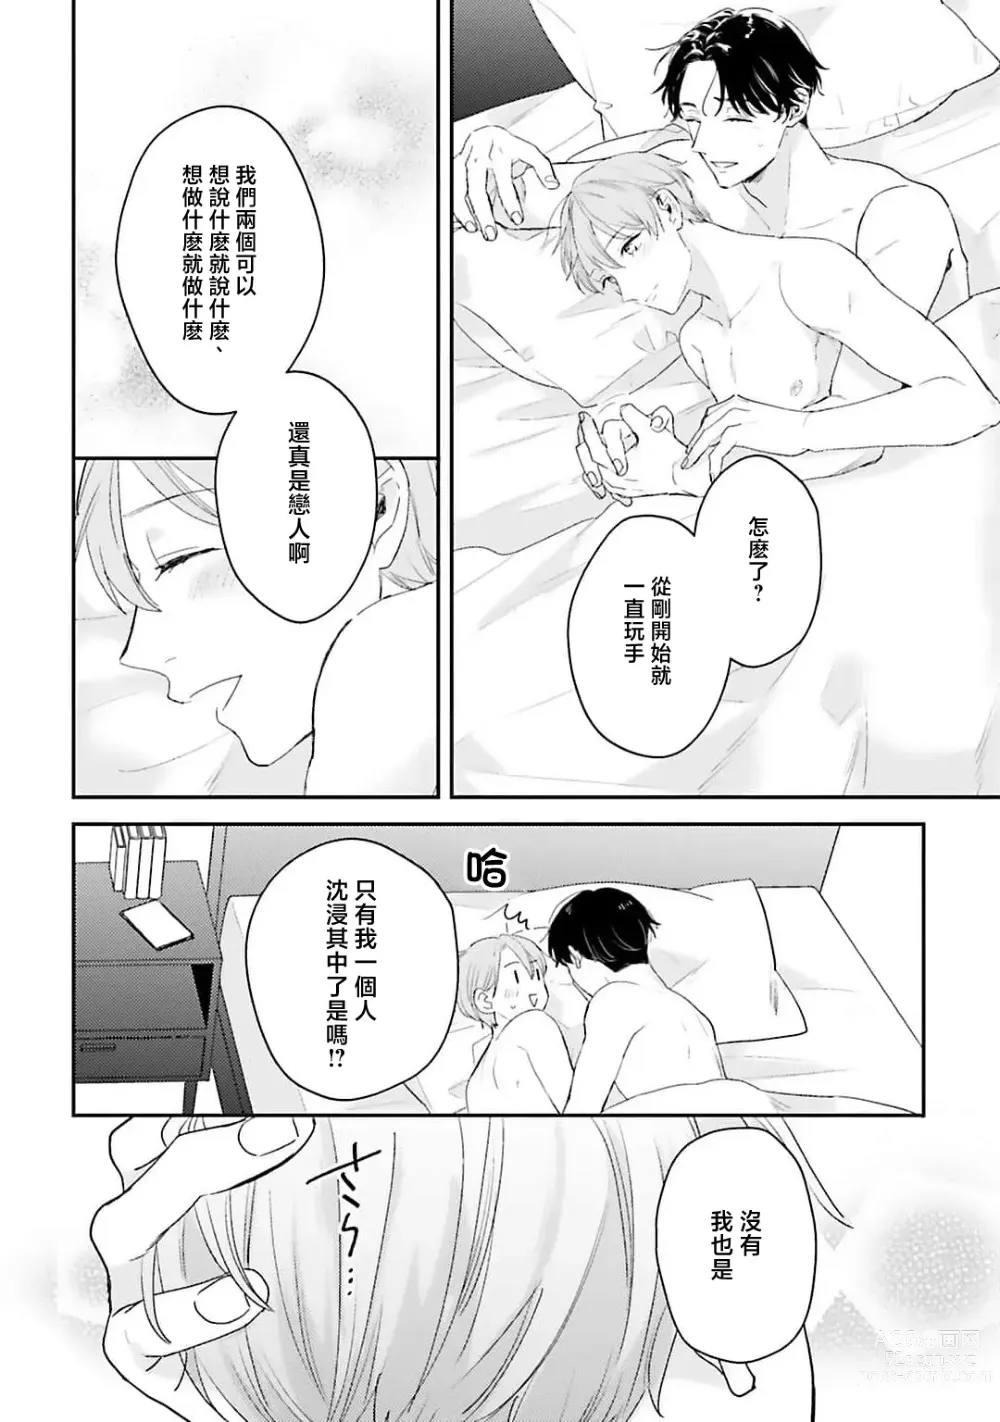 Page 162 of manga 绽放的恋爱皆为醉与甜1-5